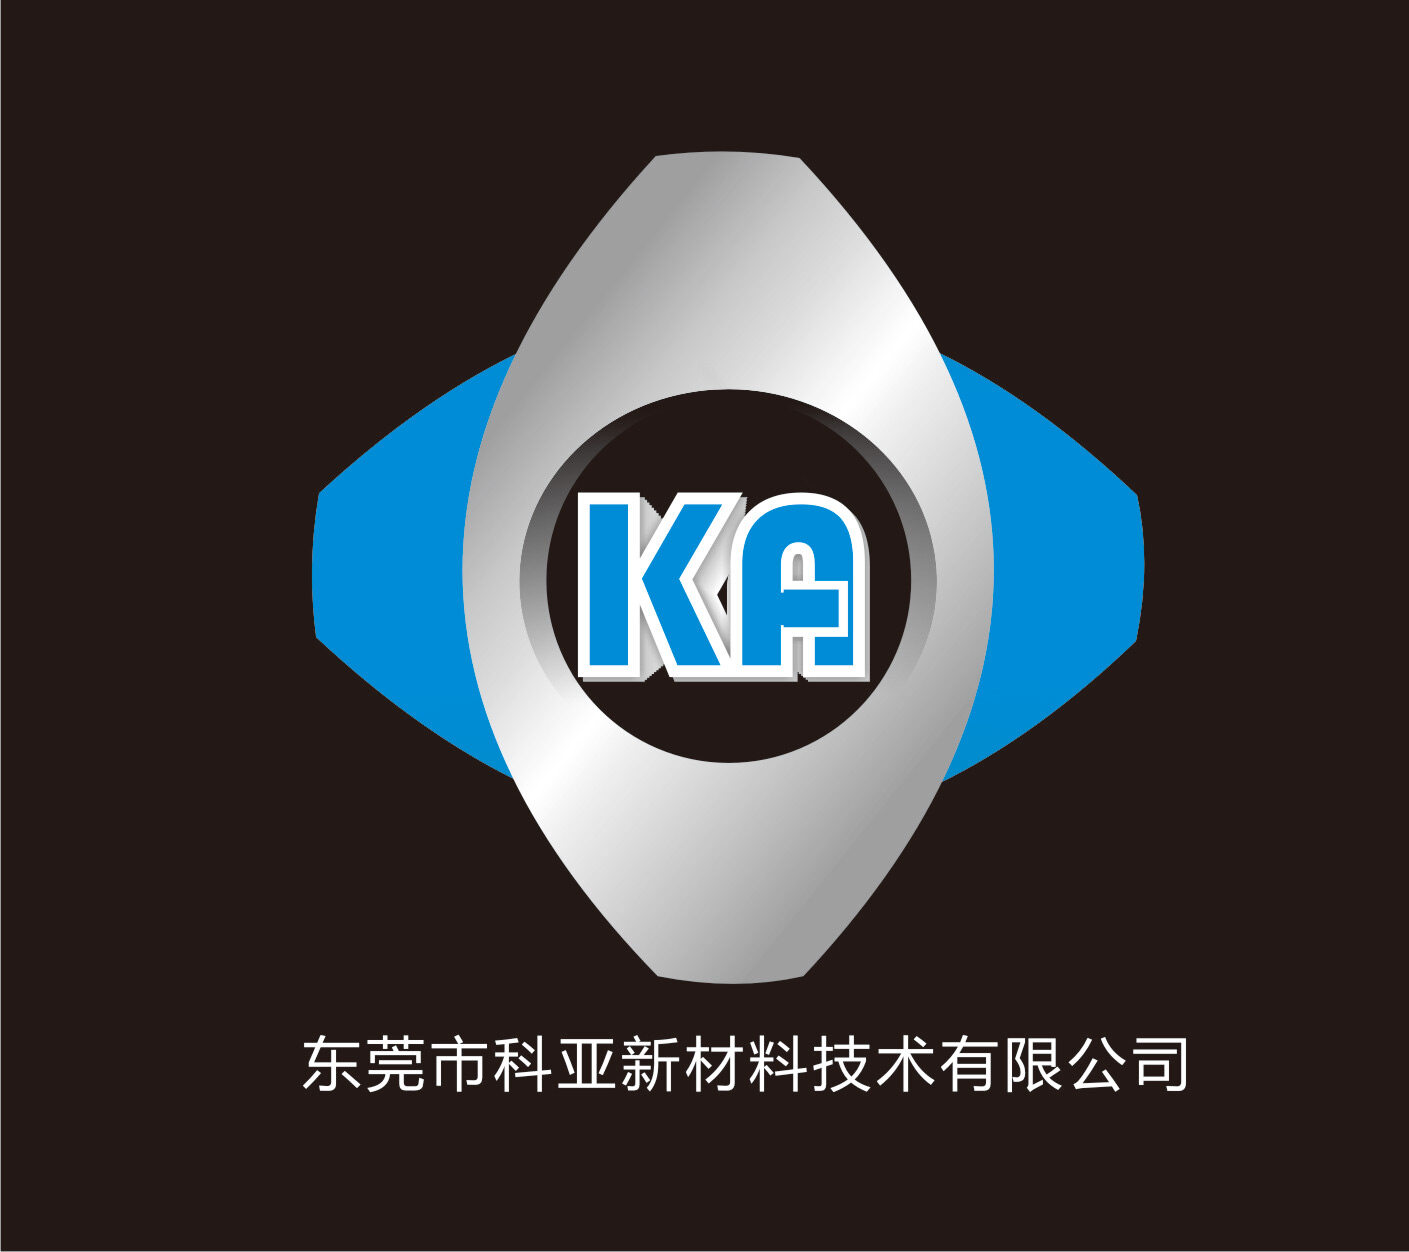 东莞市科亚新材料技术有限公司logo